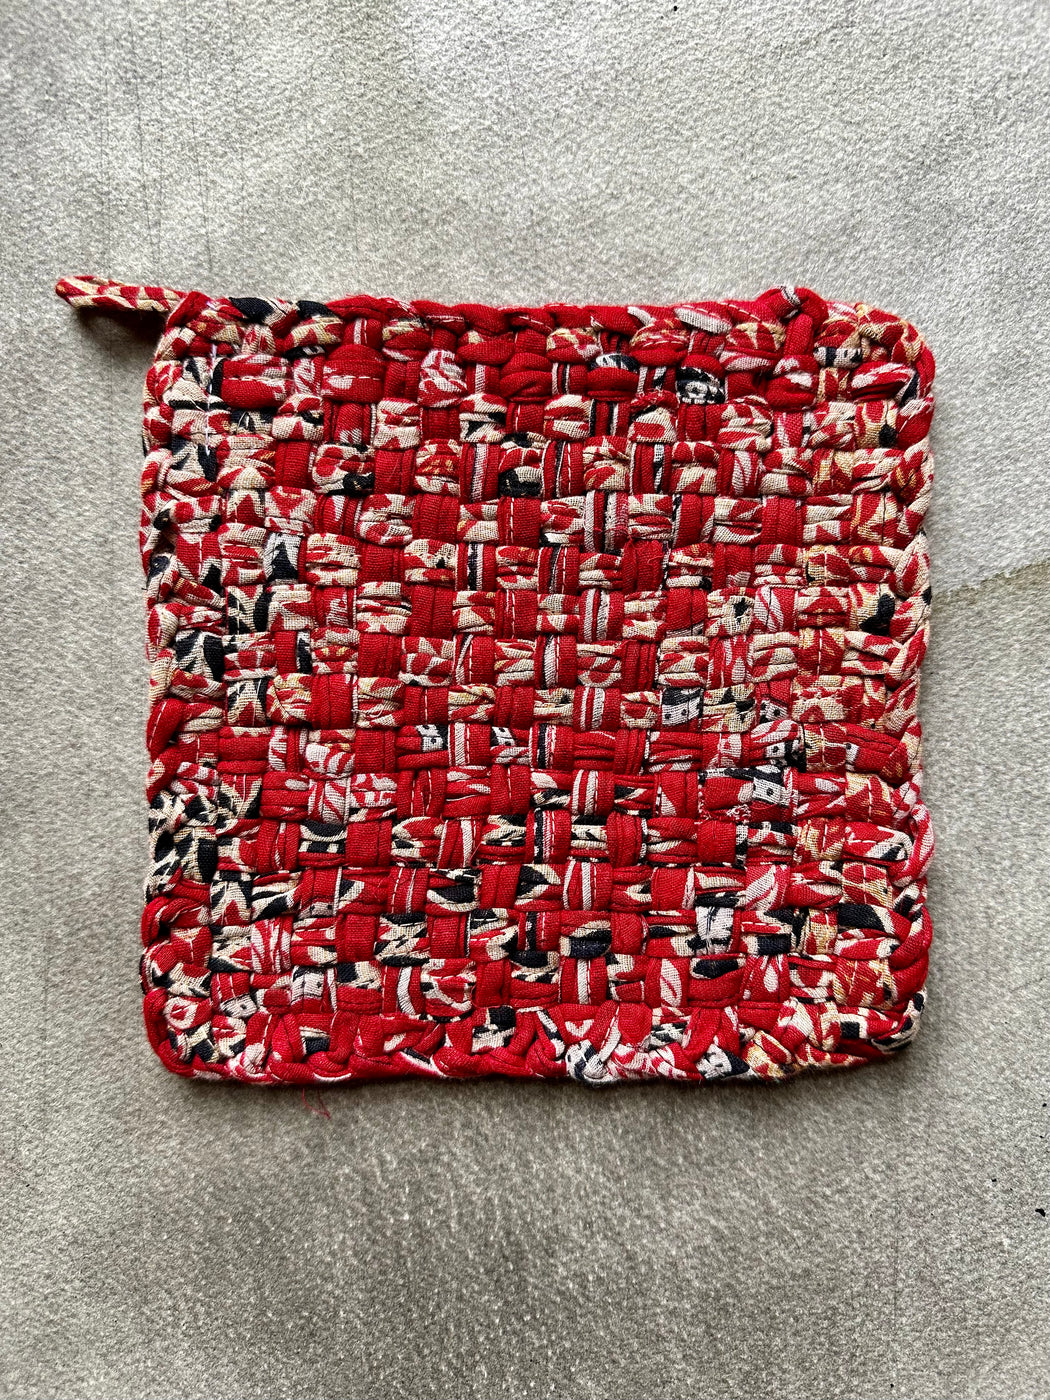 Woven Cotton Sari Potholders - Reds